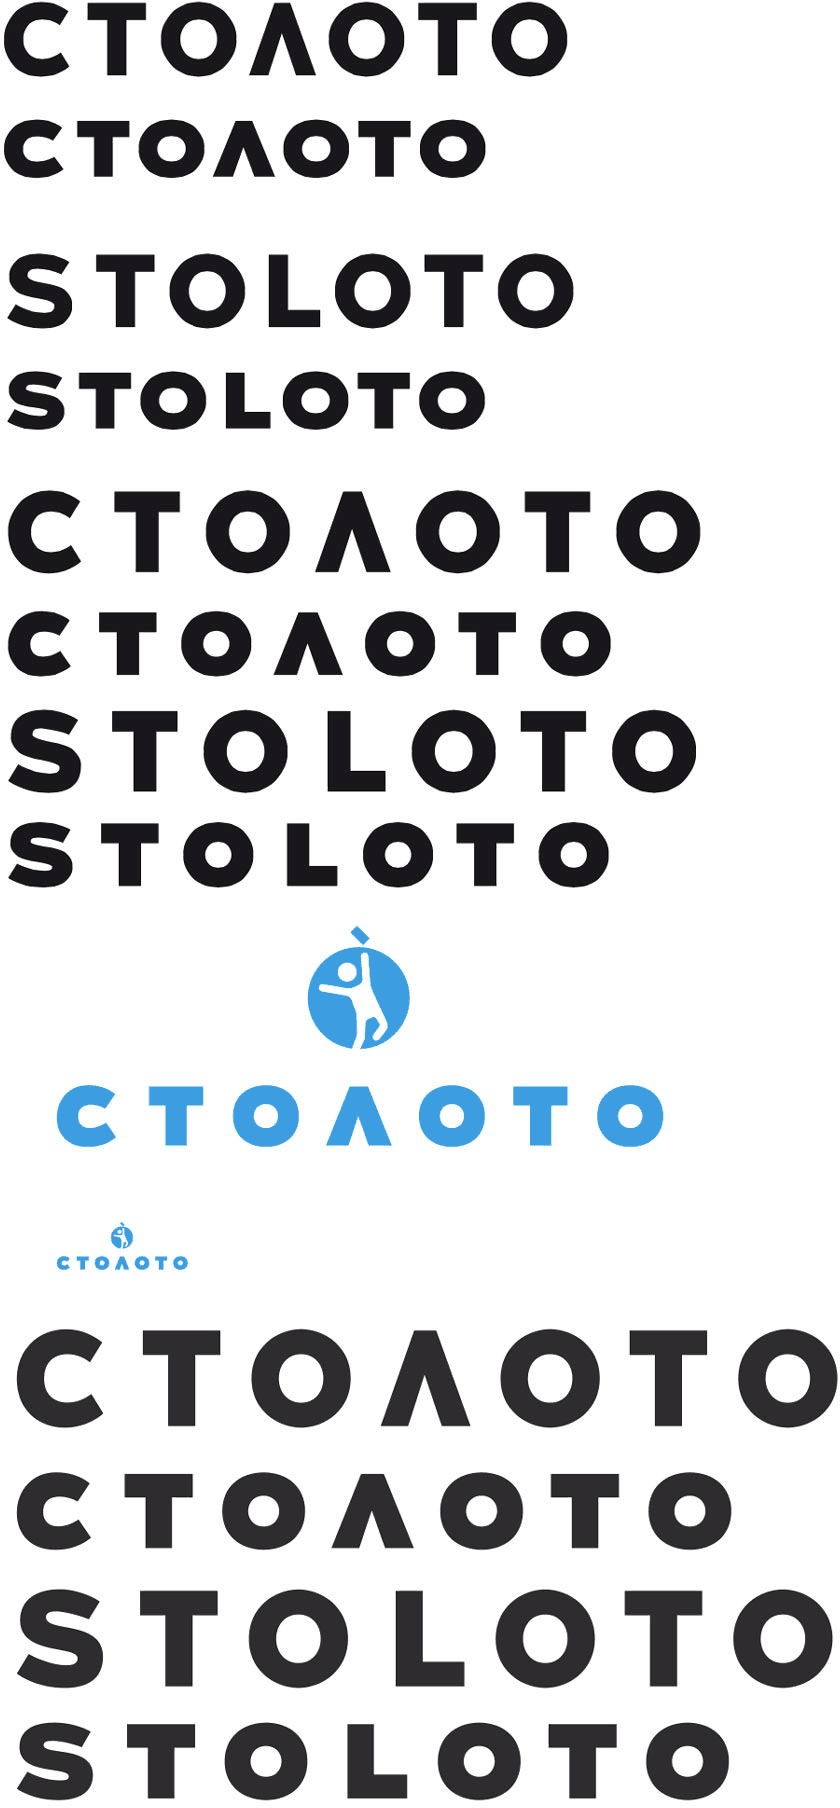 stoloto logo2 process 14